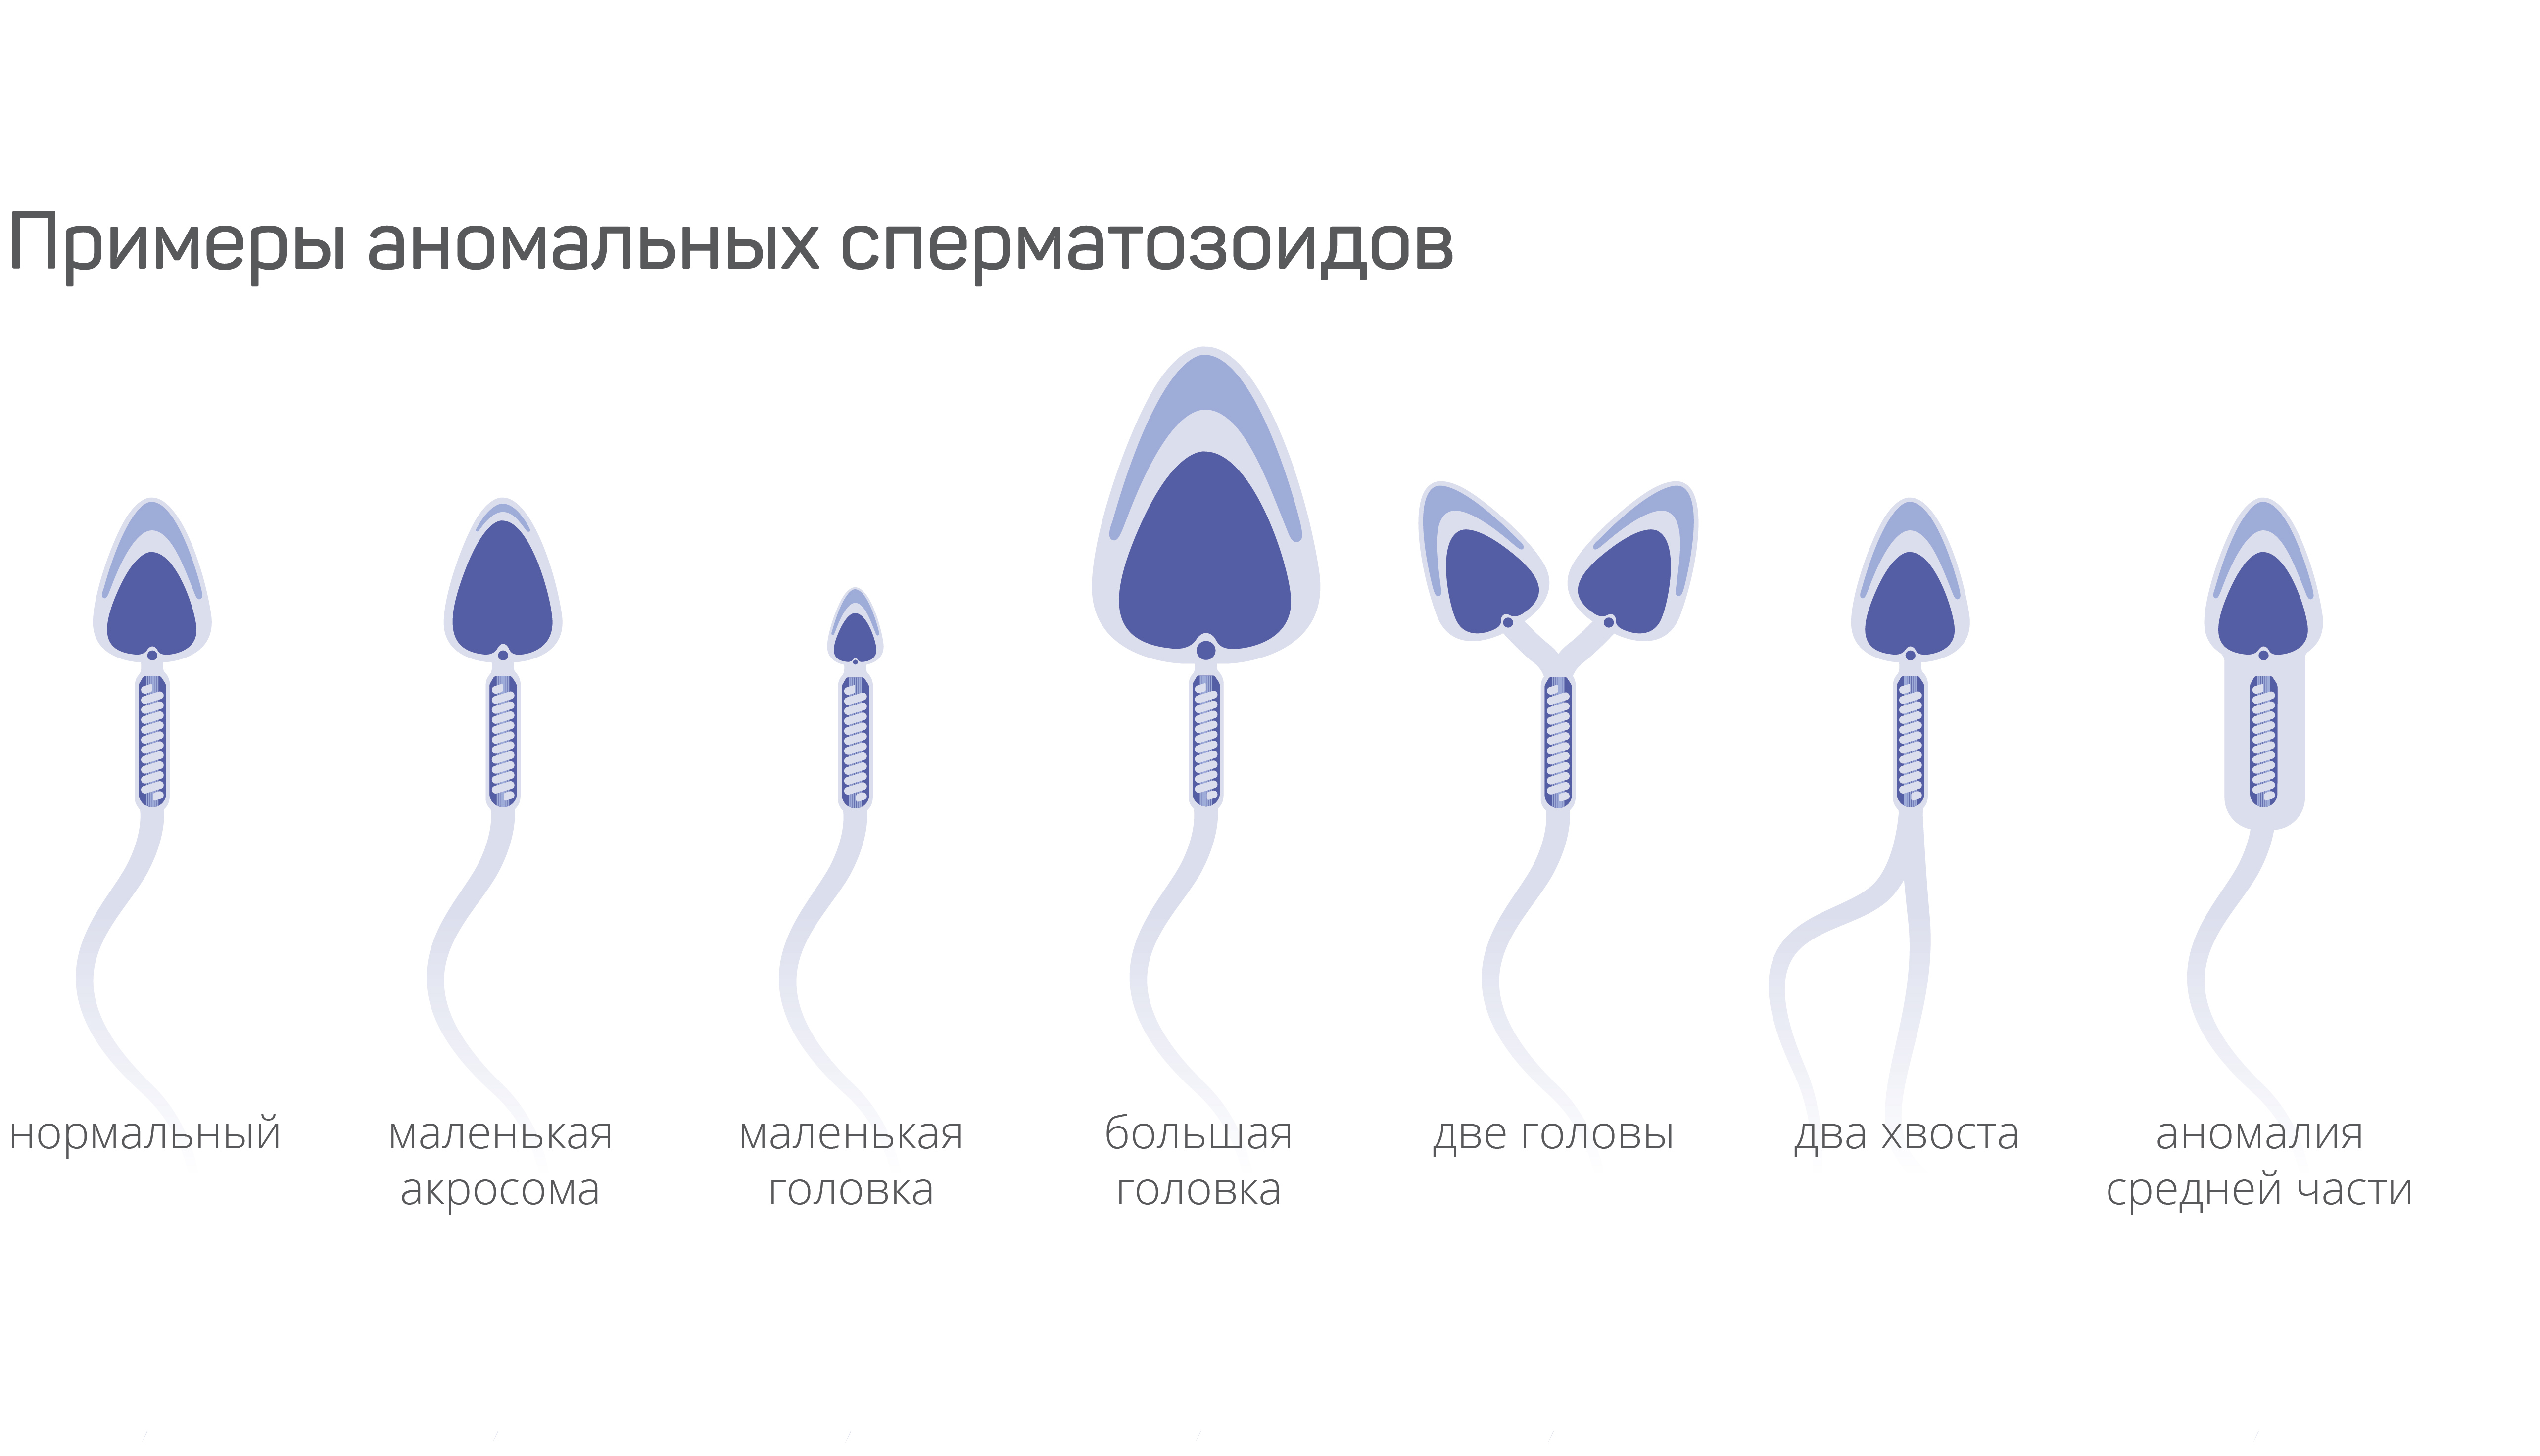 Тератоспермия (высокое содержание сперматозоидов с аномальным строением)